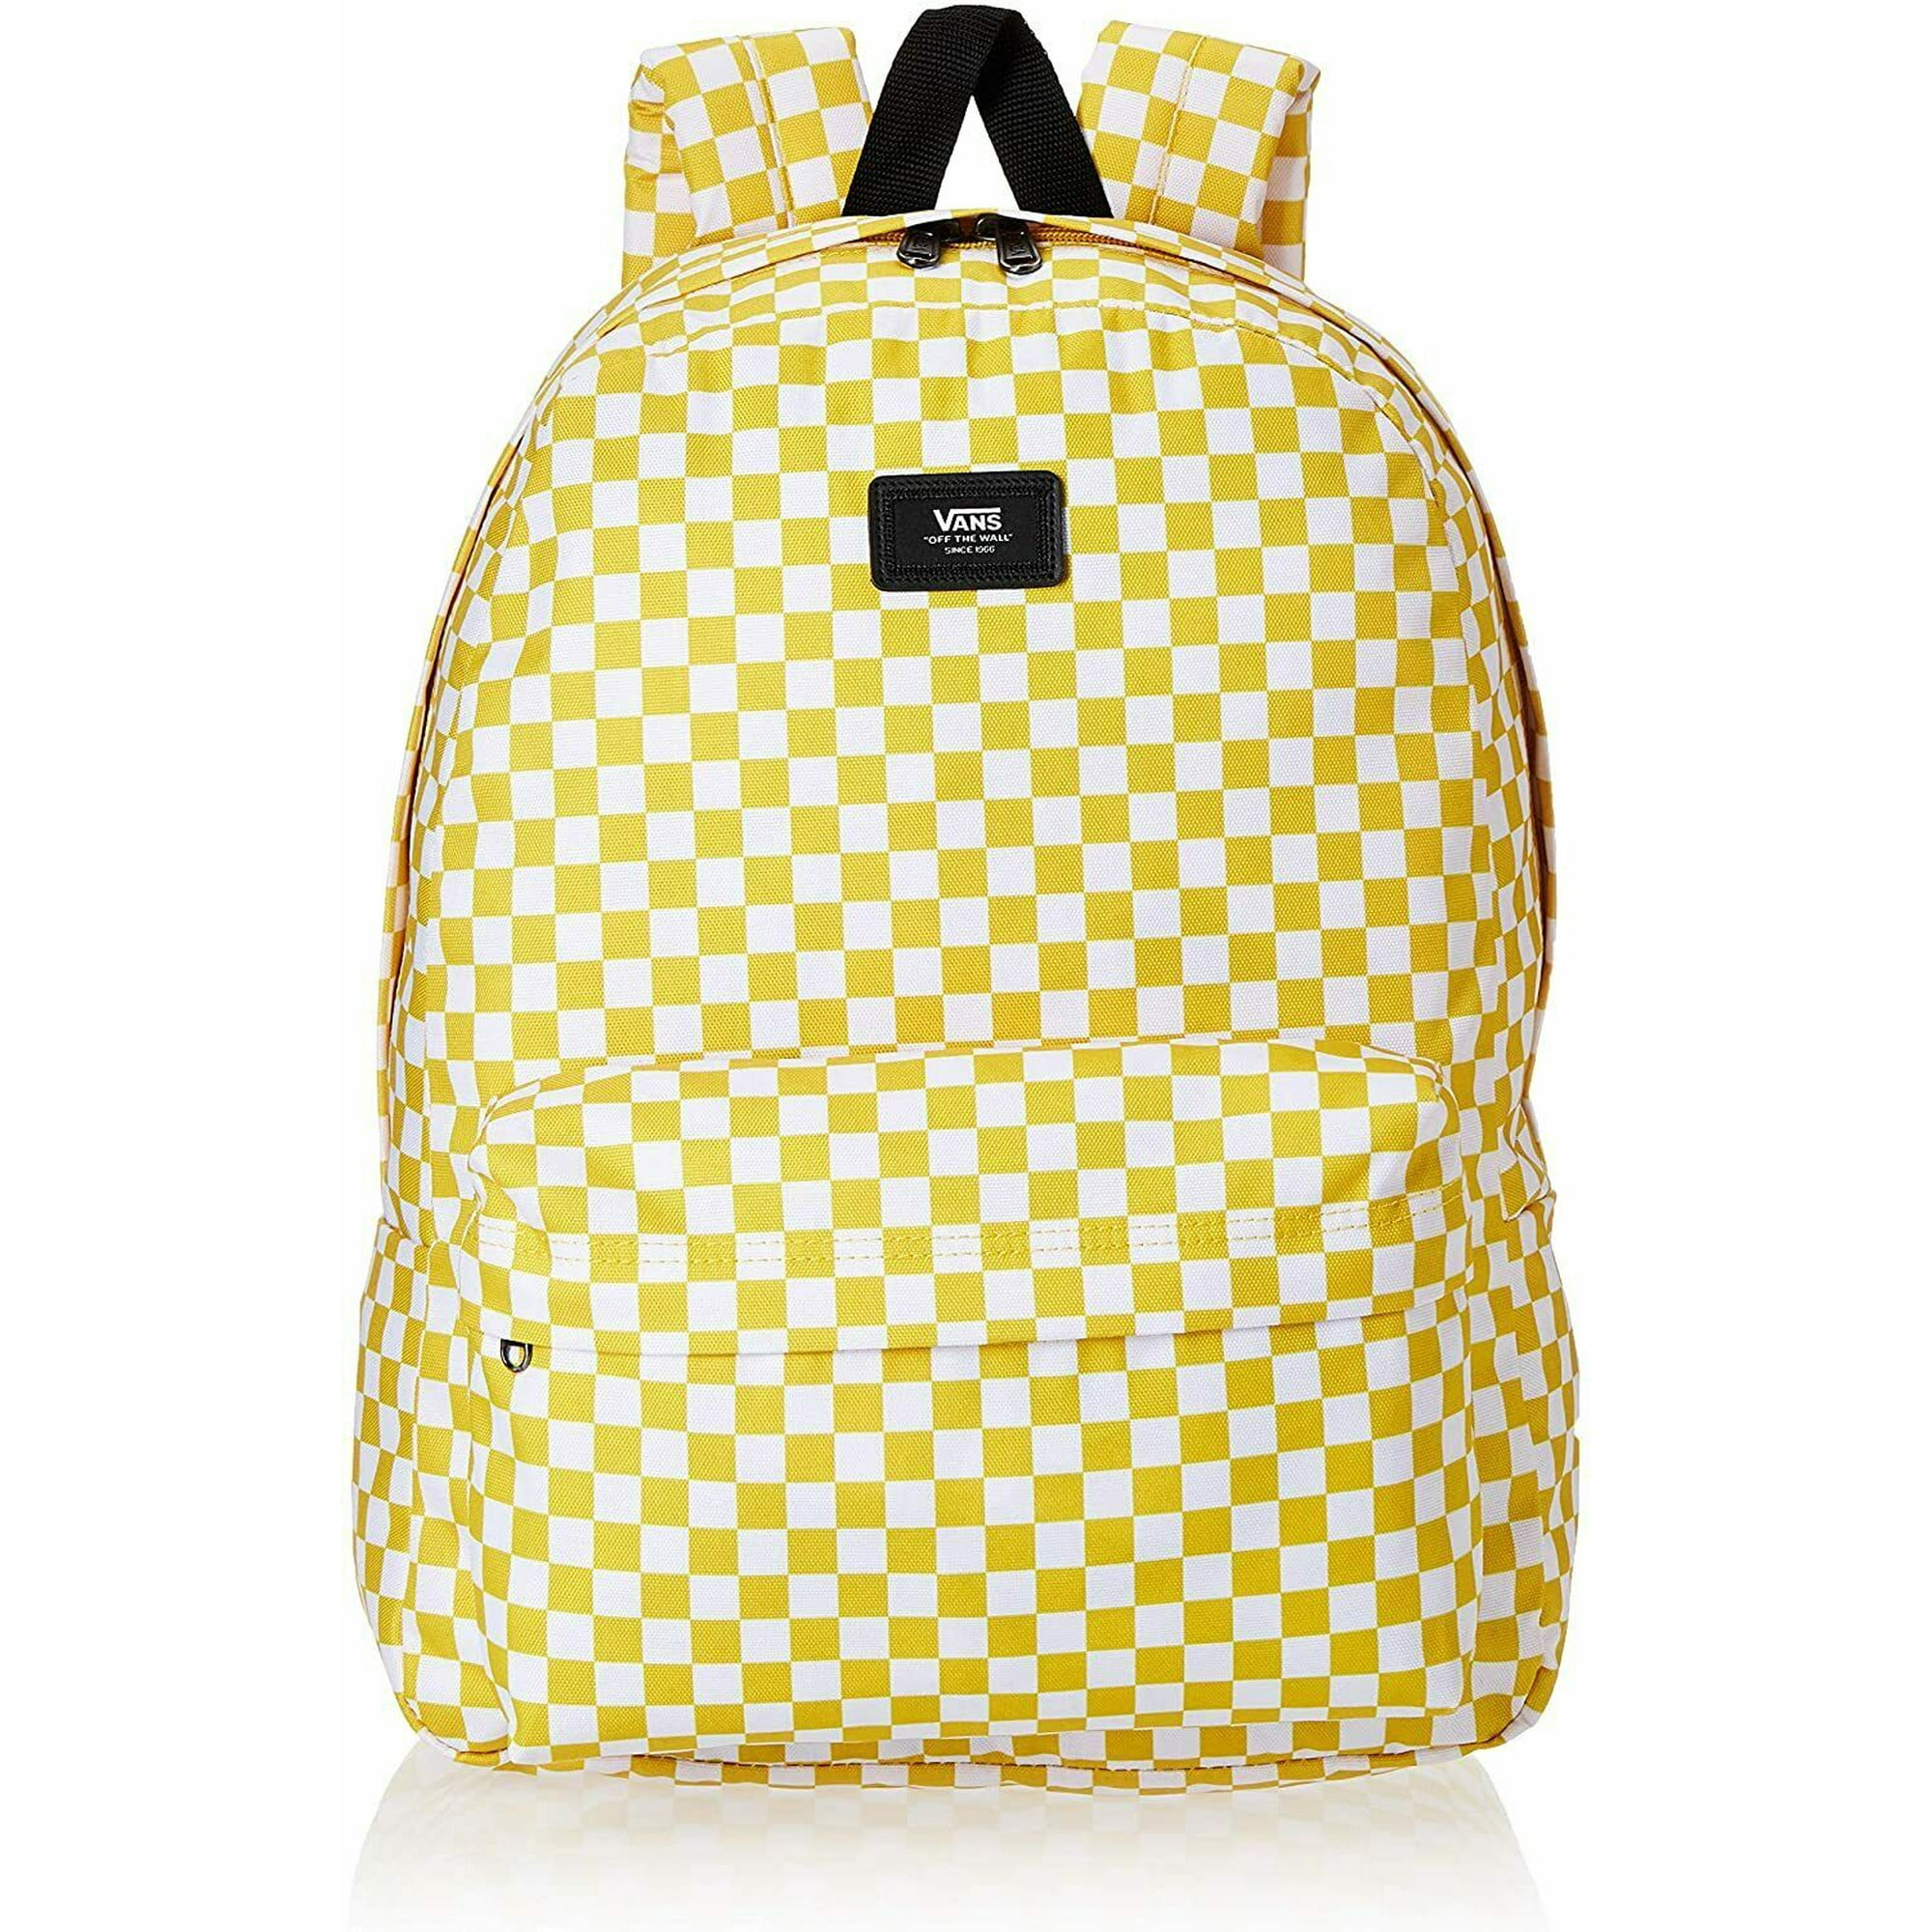 Vans Old Skool Checkerboard Backpack School Bag Walmart.com